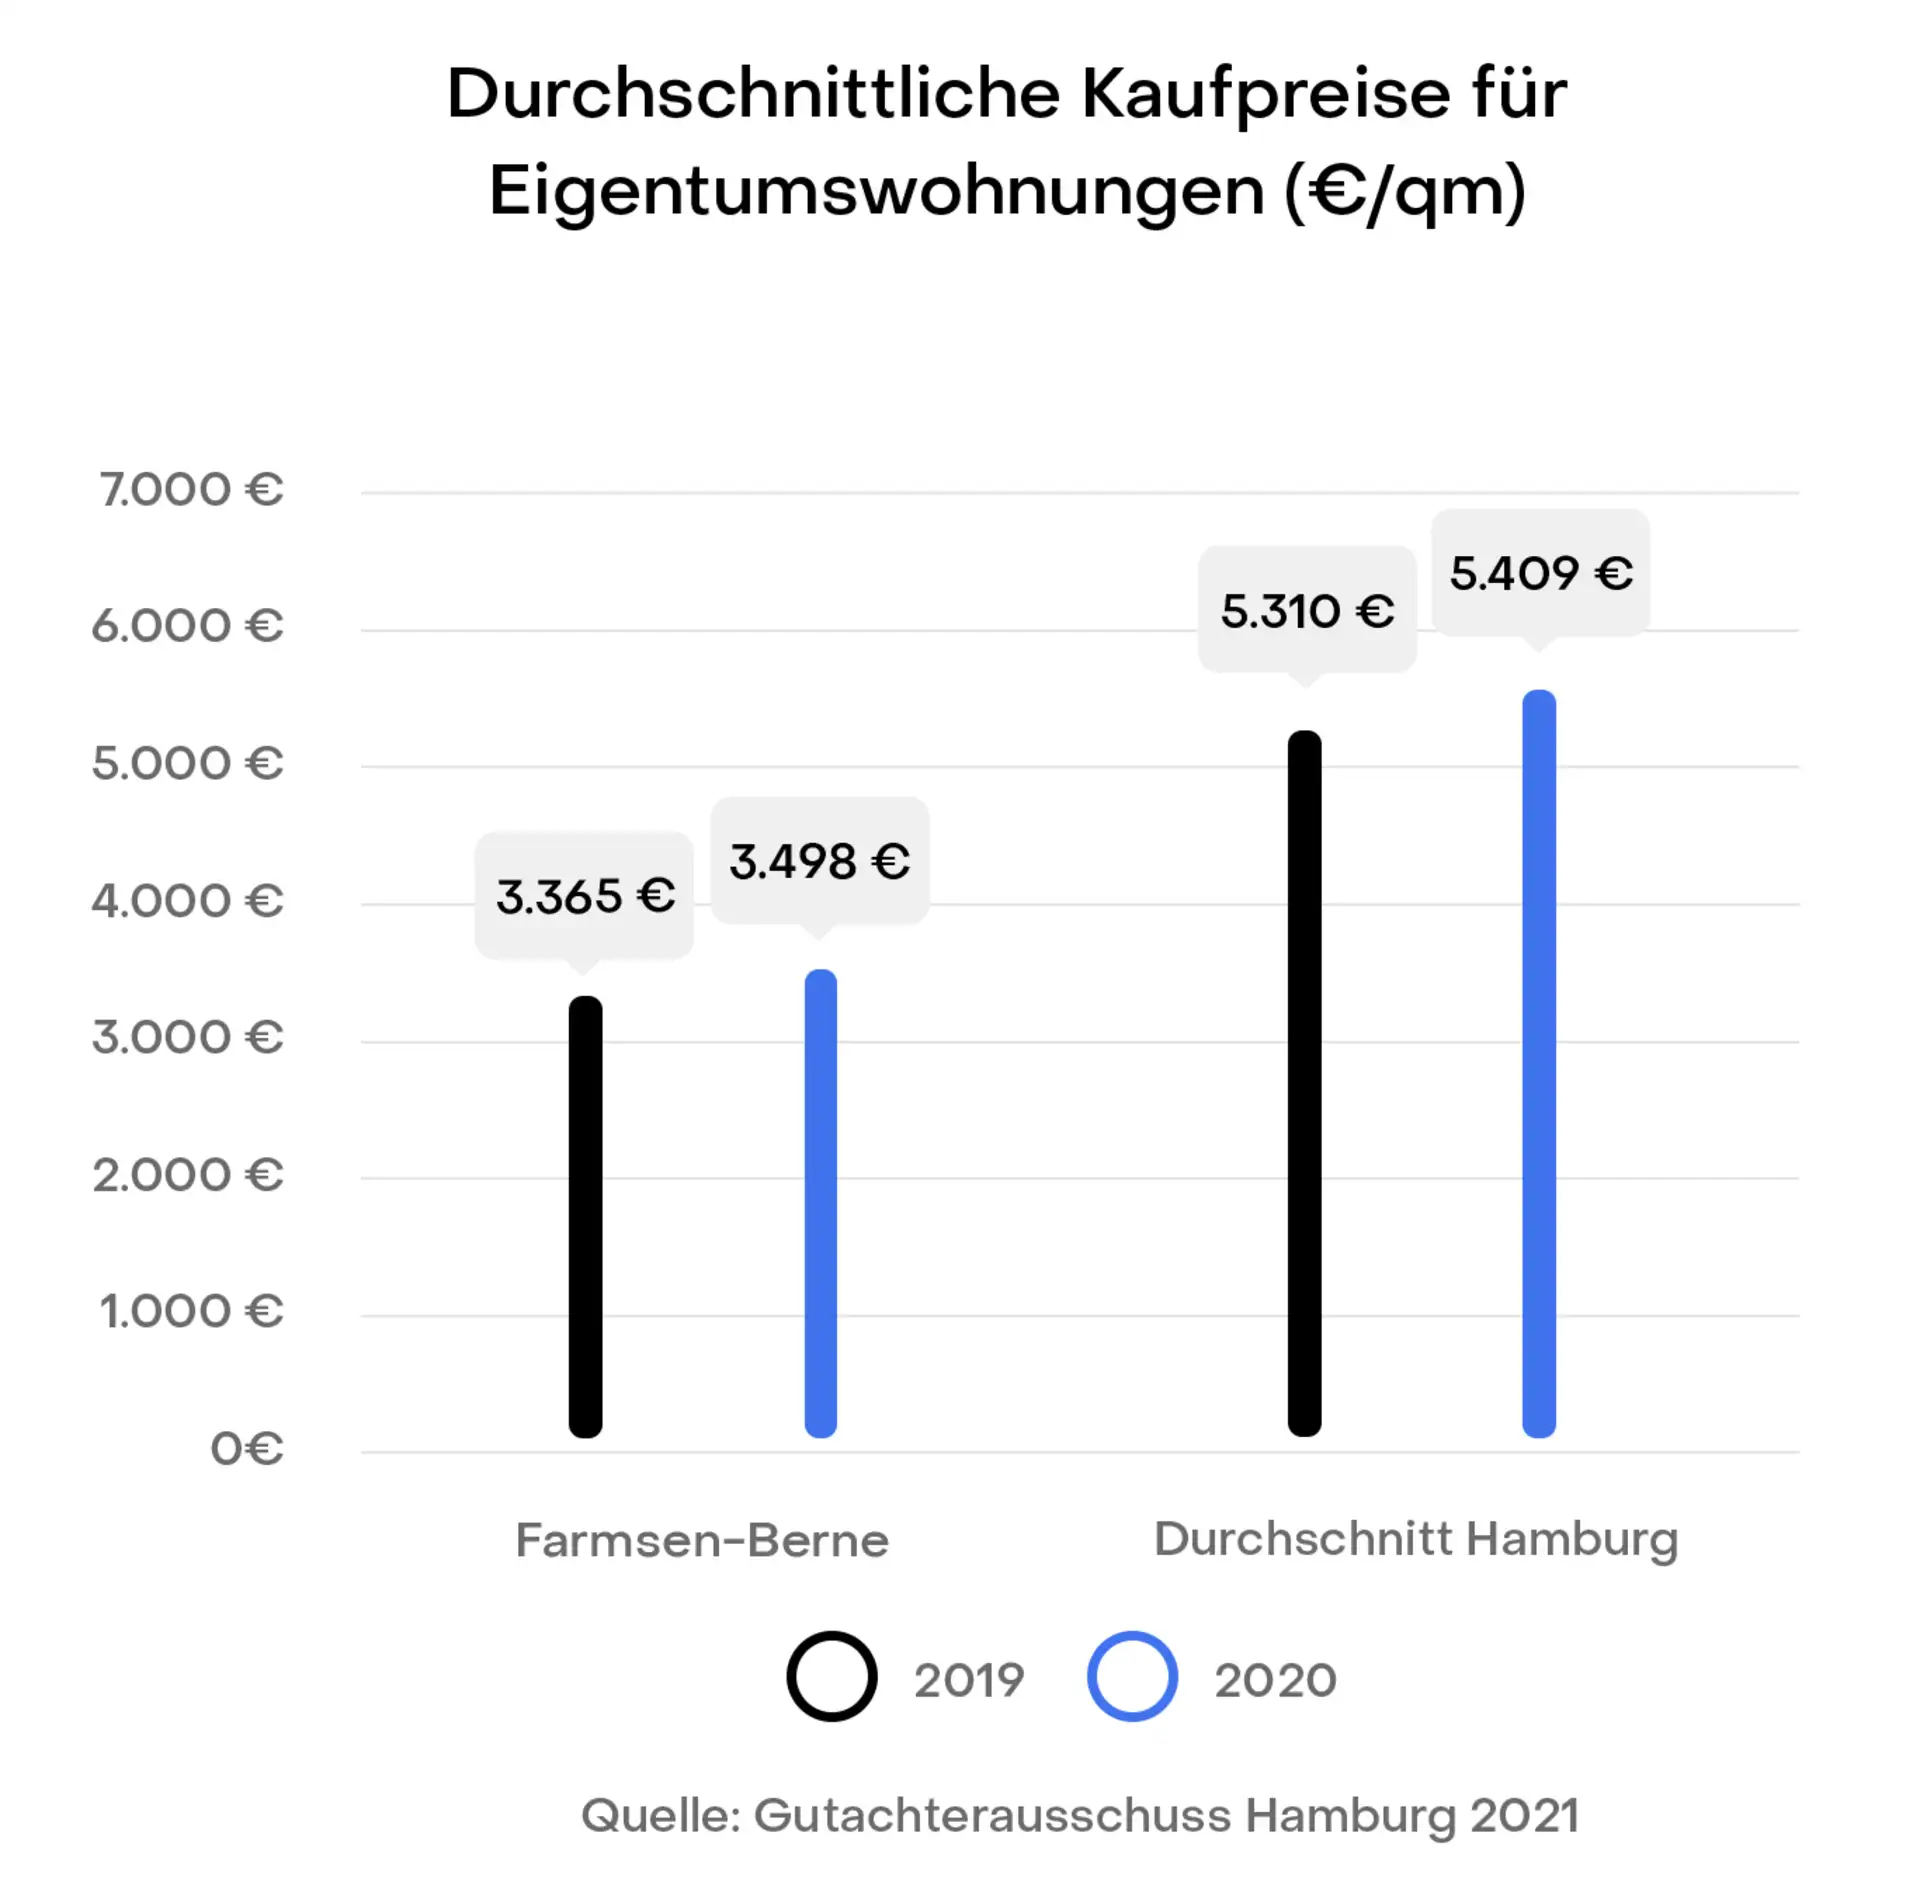 Hamburg Farmsen-Berne Preisentwicklung Immobilien Kaufpreise
Gutachterausschuss